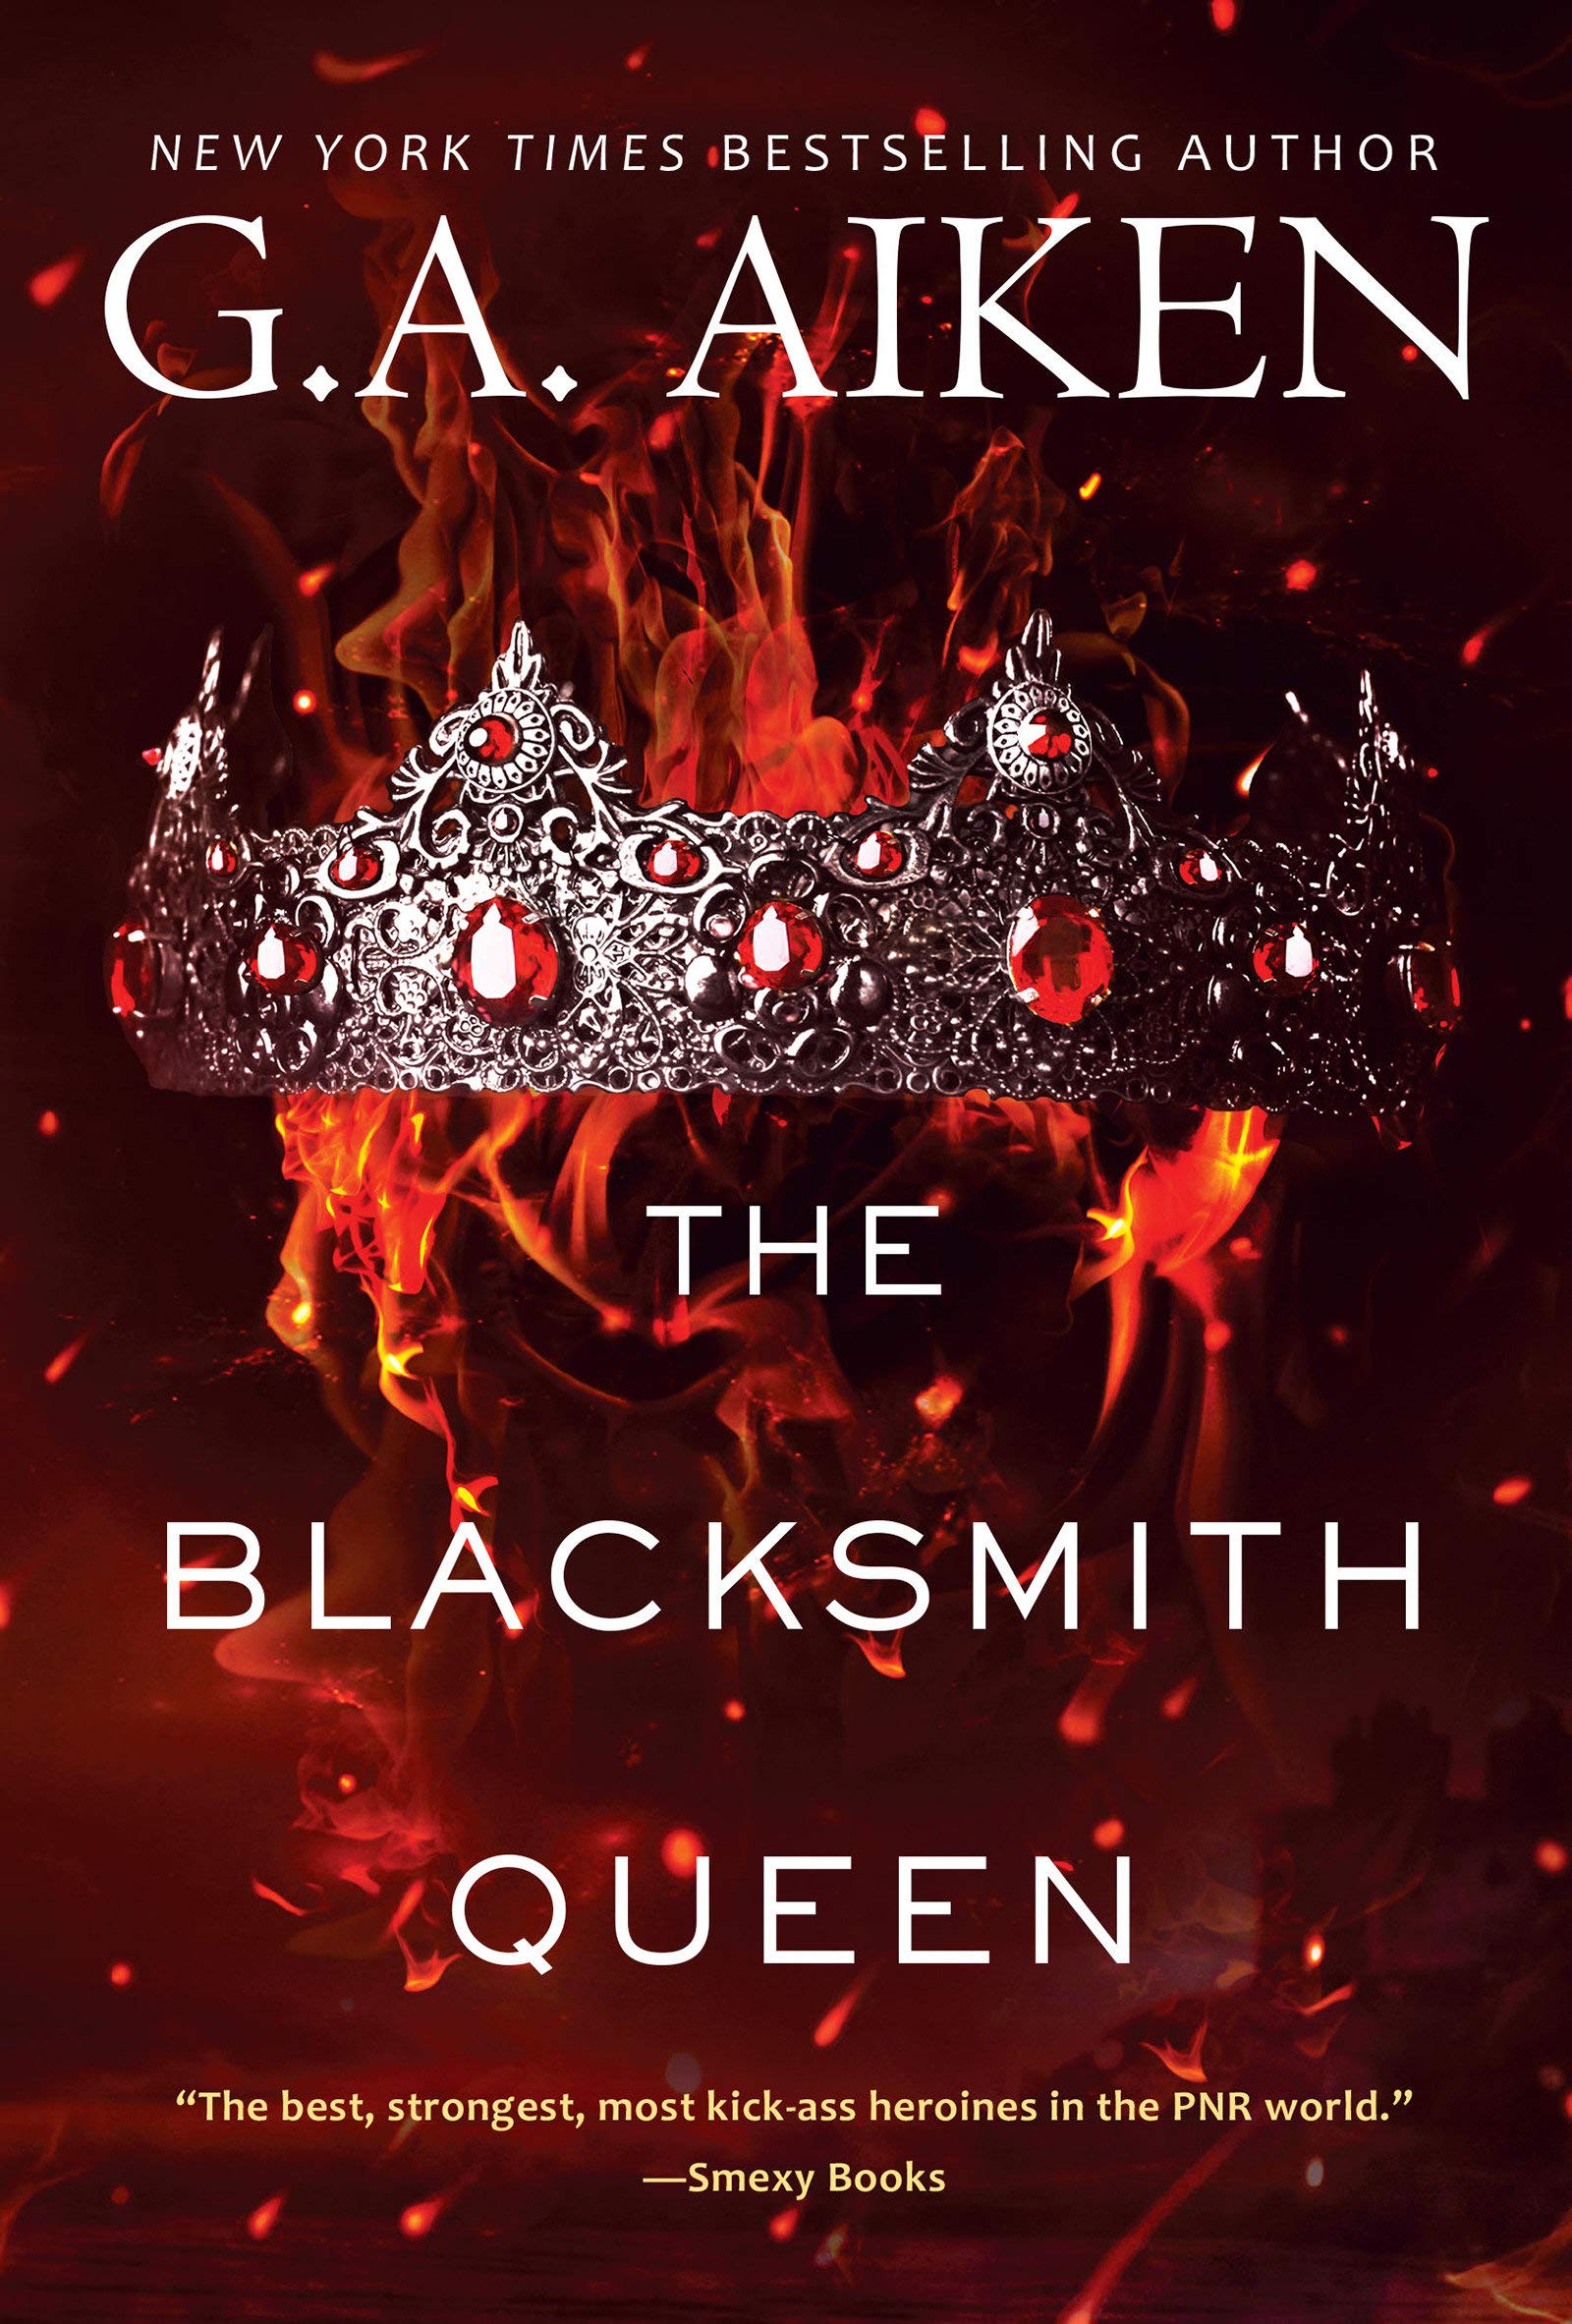 Blacksmith Queen